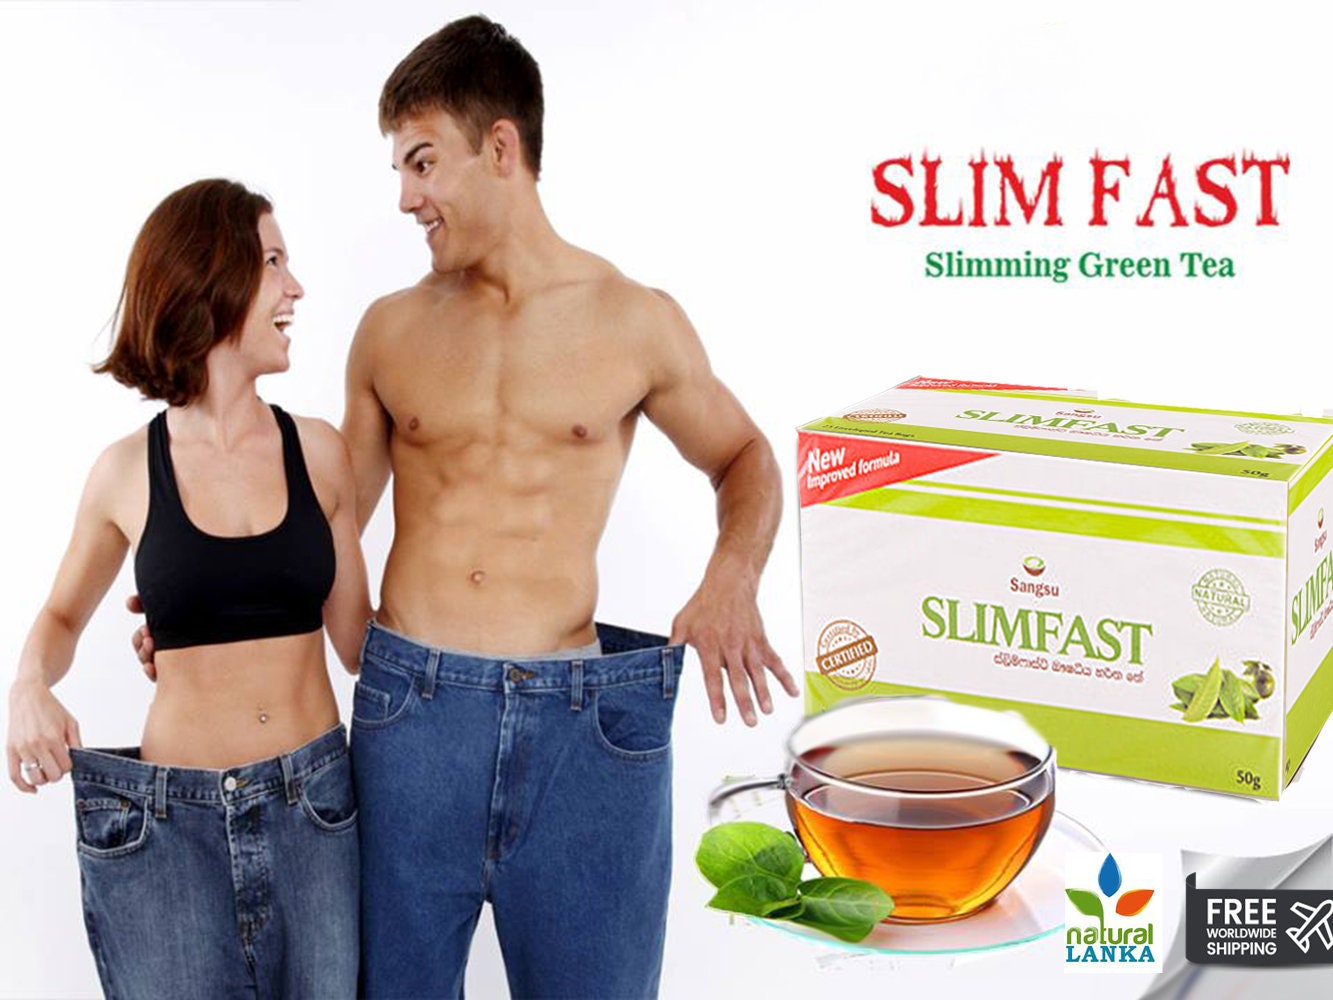 Weight Loss Tea Sangsu SLIM FAST Fast Fat Burning Green Tea Sri